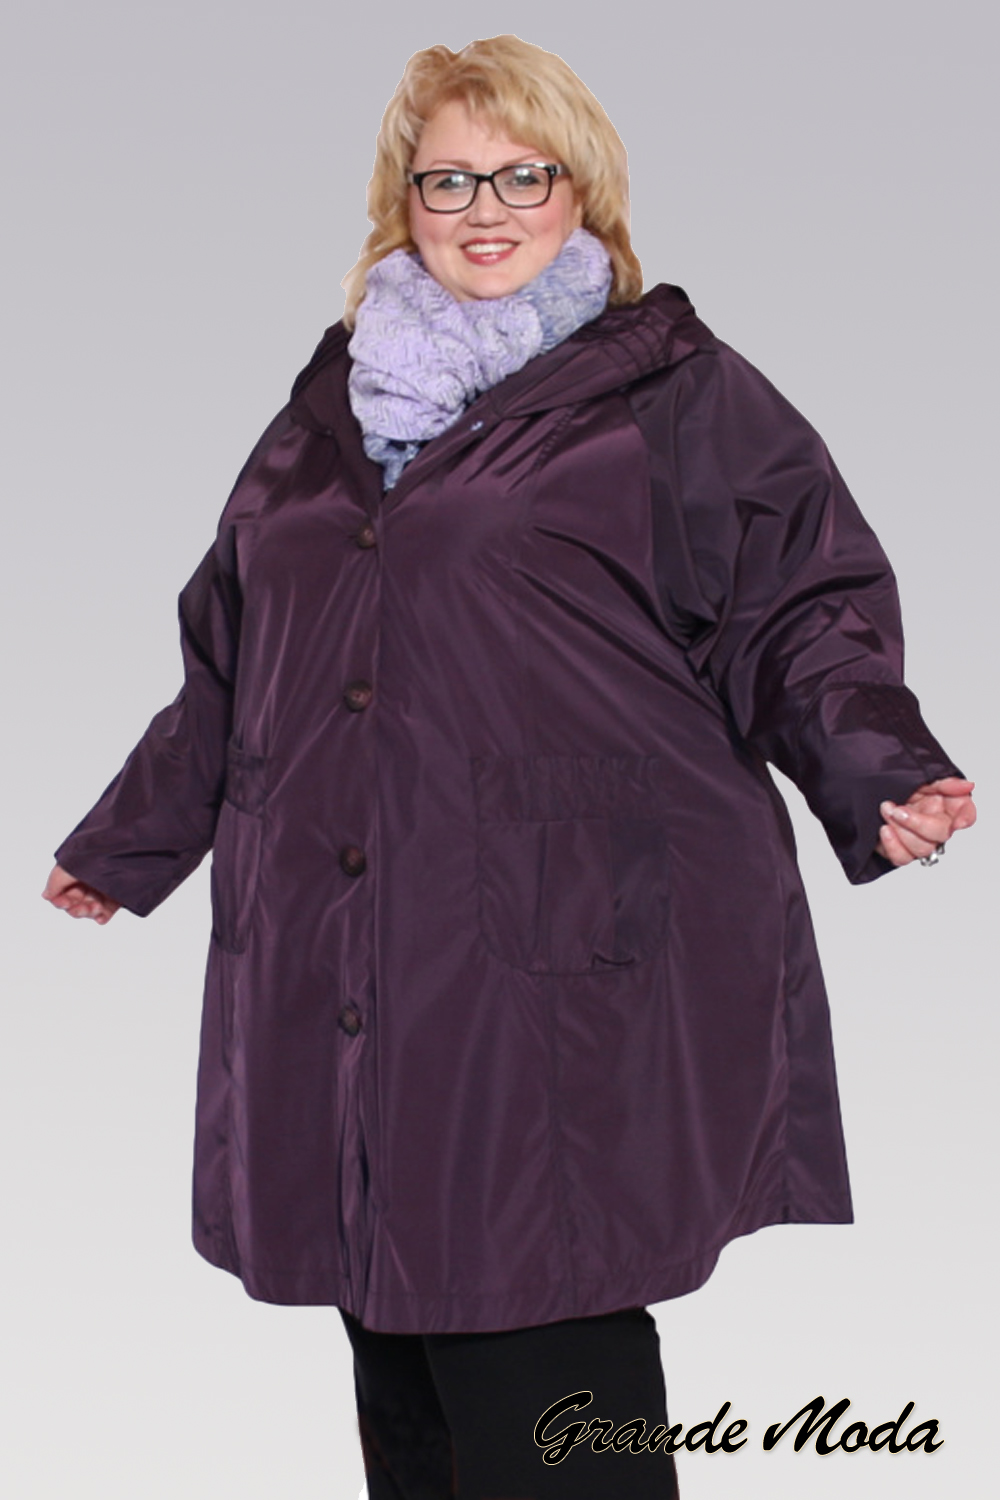 Недорогие зимние куртки женские больших размеров